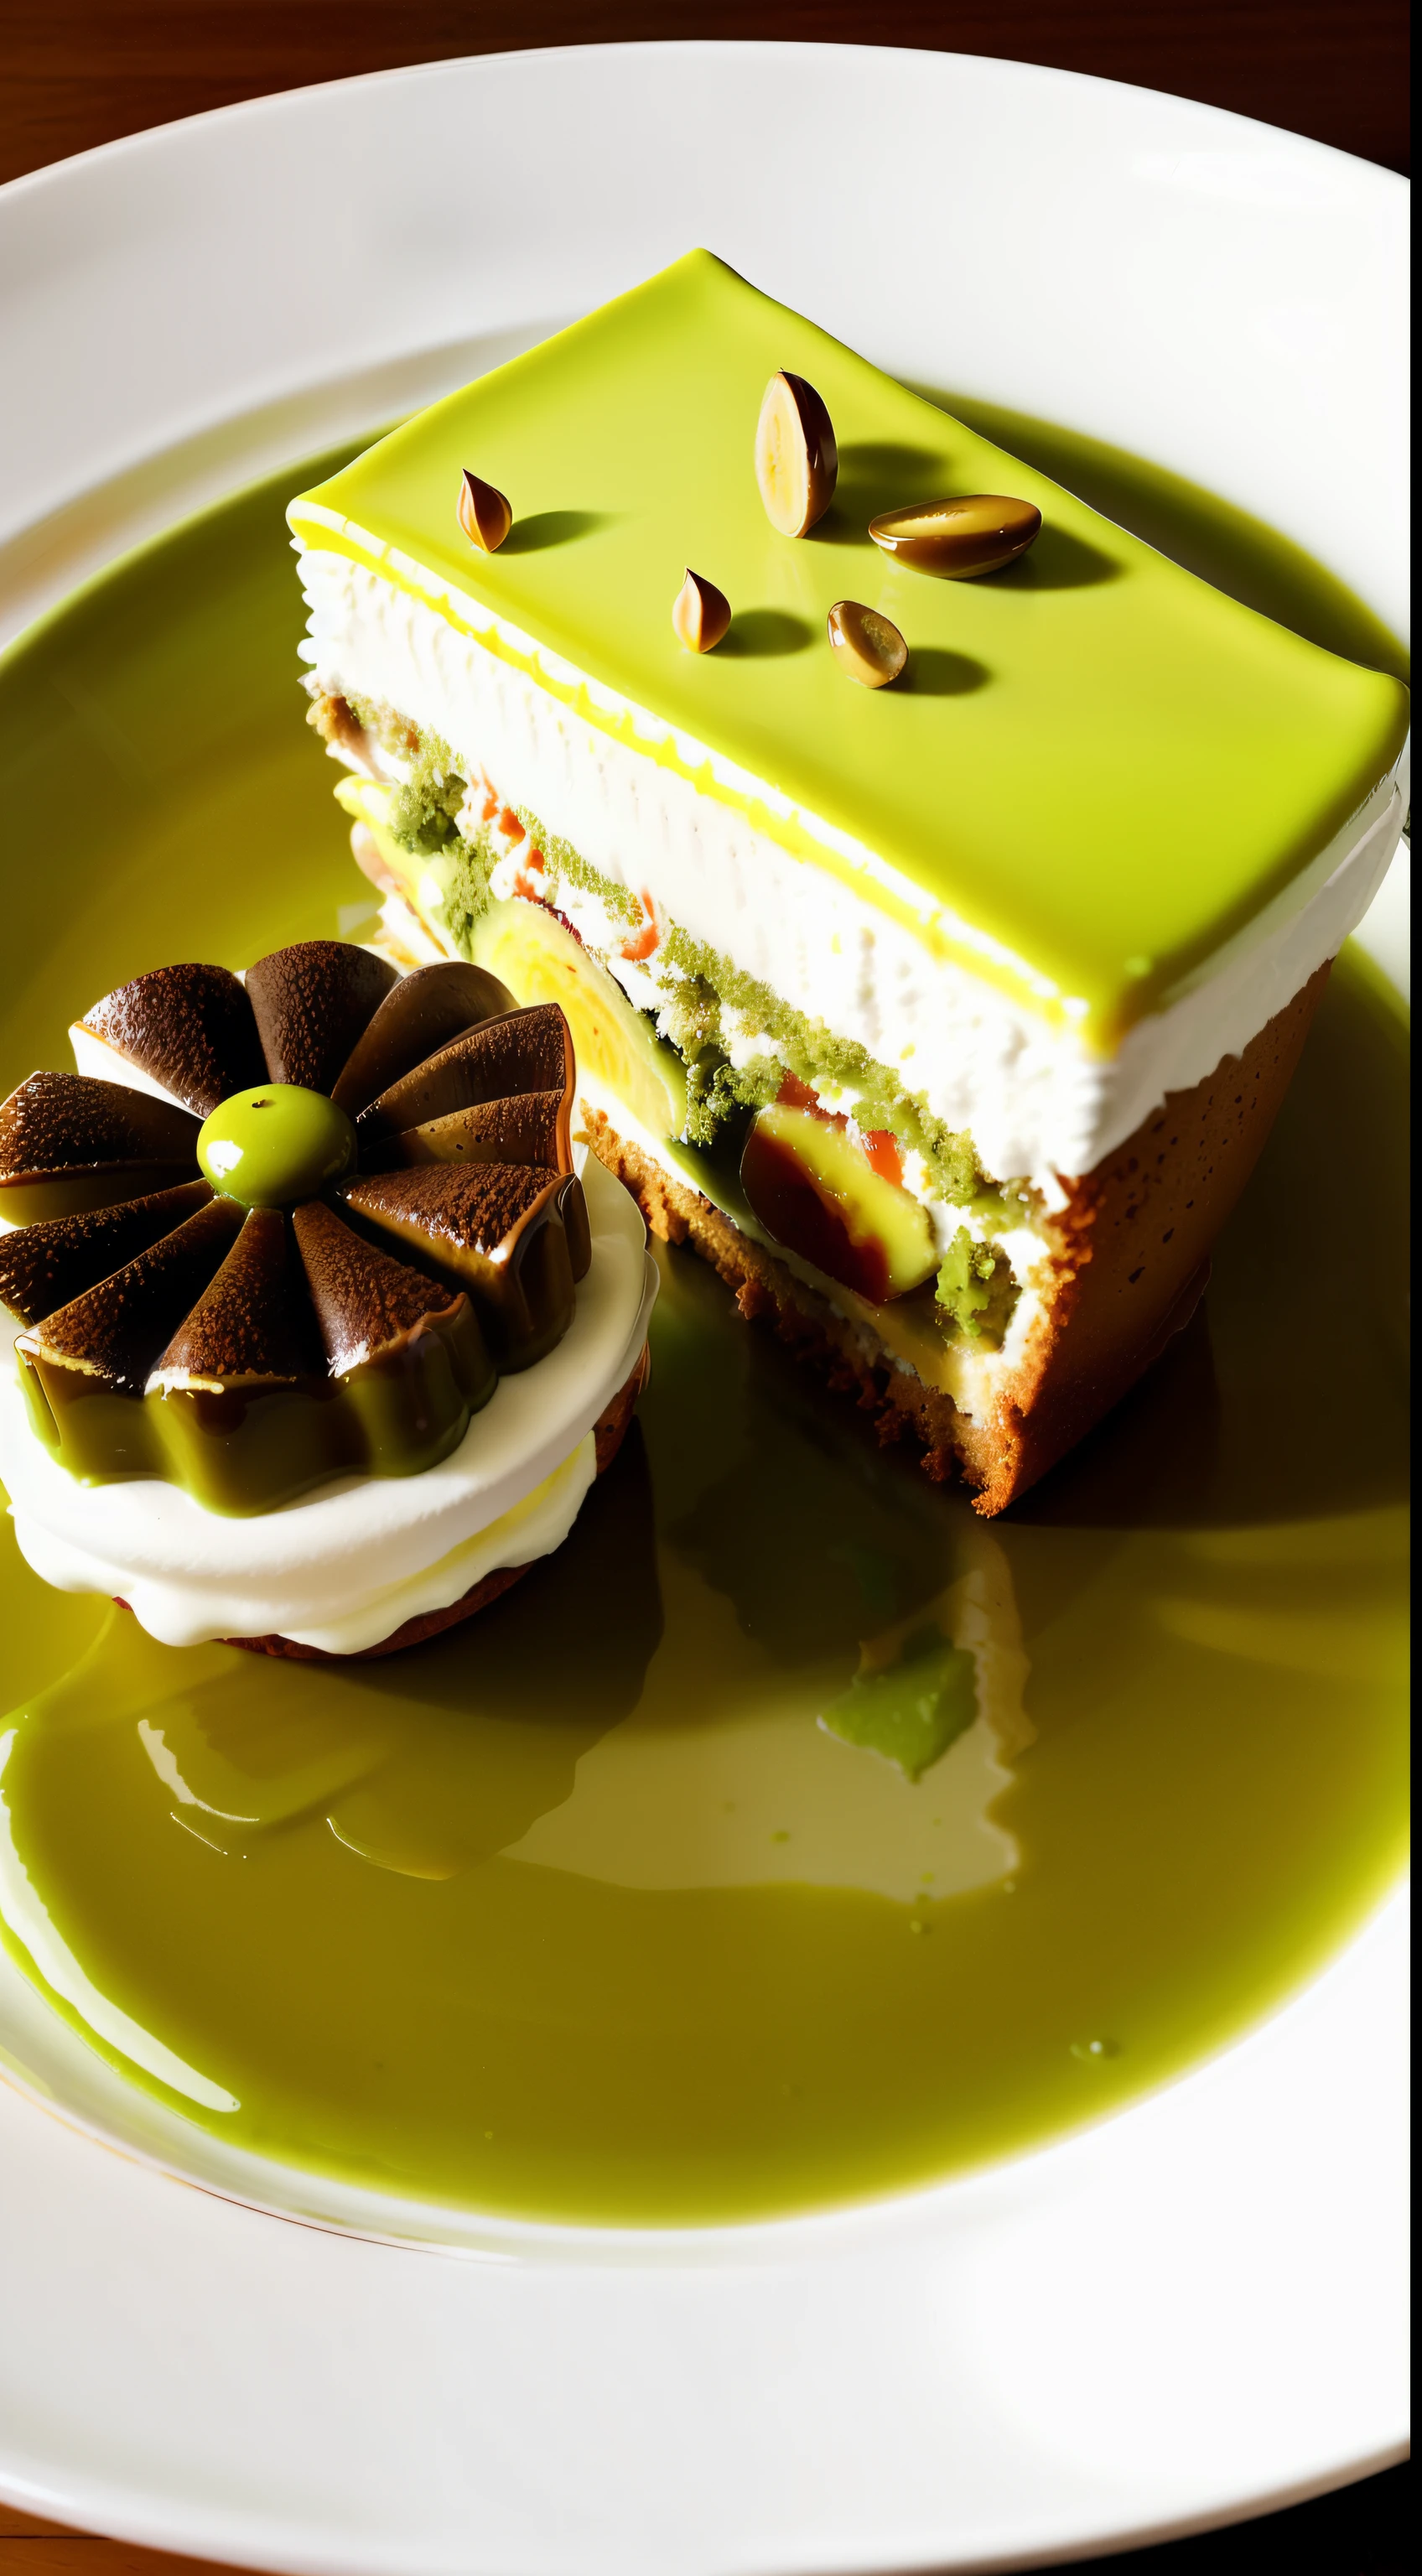 （複雜的細節：1.12），高動態範圍，（複雜的細節，超詳細：1.15）,盤子裡有一塊蛋糕，上面有叉子, 盛在盤子裡, 糕點店, 靈感來自里士滿巴泰, 在盤子上, 嗯嗯, 酪梨夢, 一片綠色, 在繁忙餐廳的盤子上, 灵感来自皮埃尔·米翁, 吃, 美味, ❤🔥🍄🌪, 洛普廷和抹茶, 甜點，寫實風格